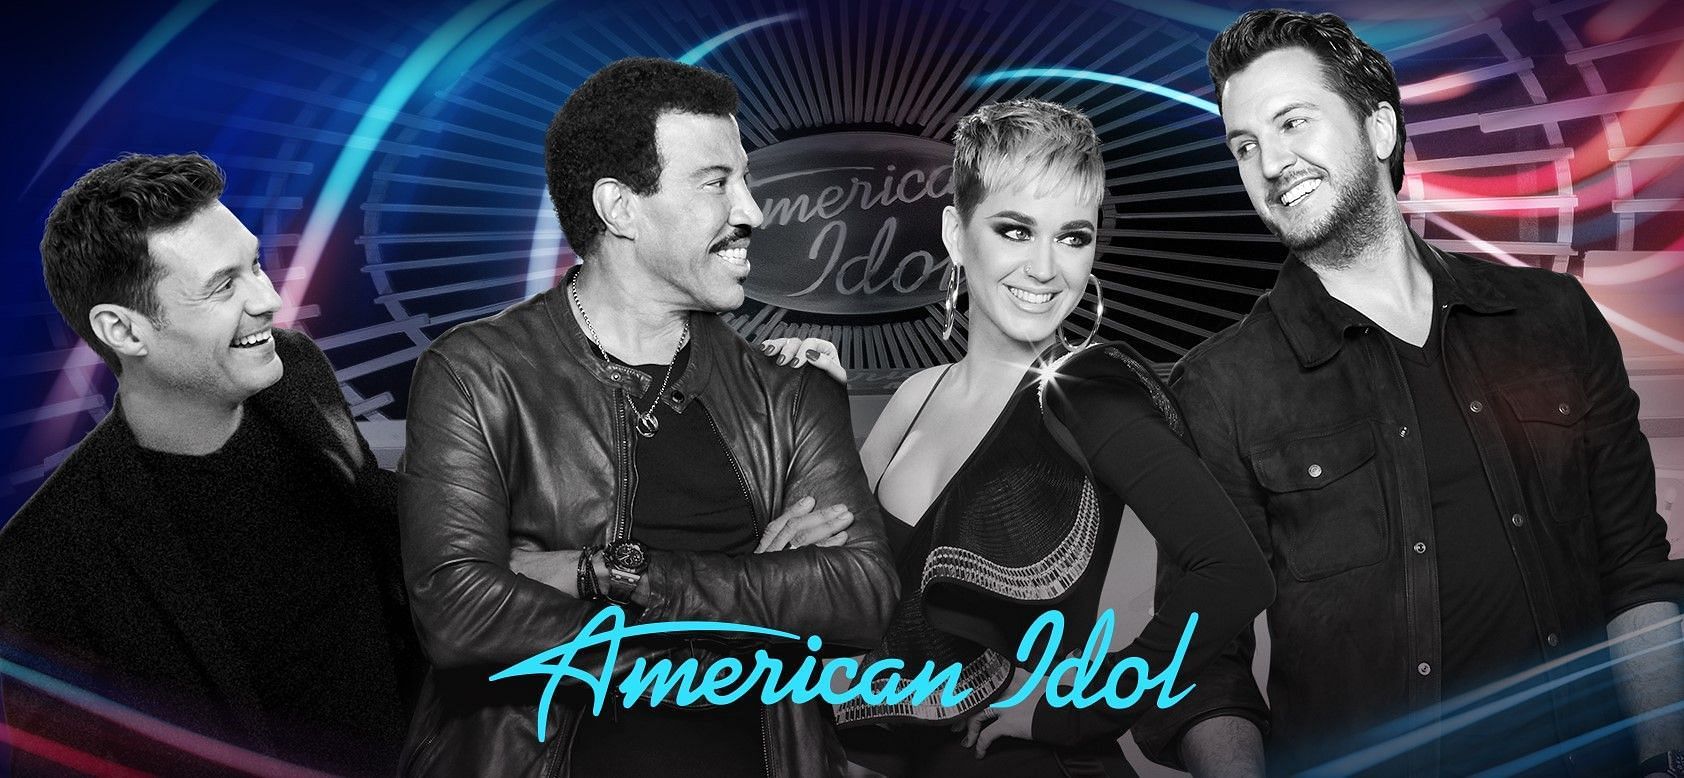 American Idol (Image via ABC)